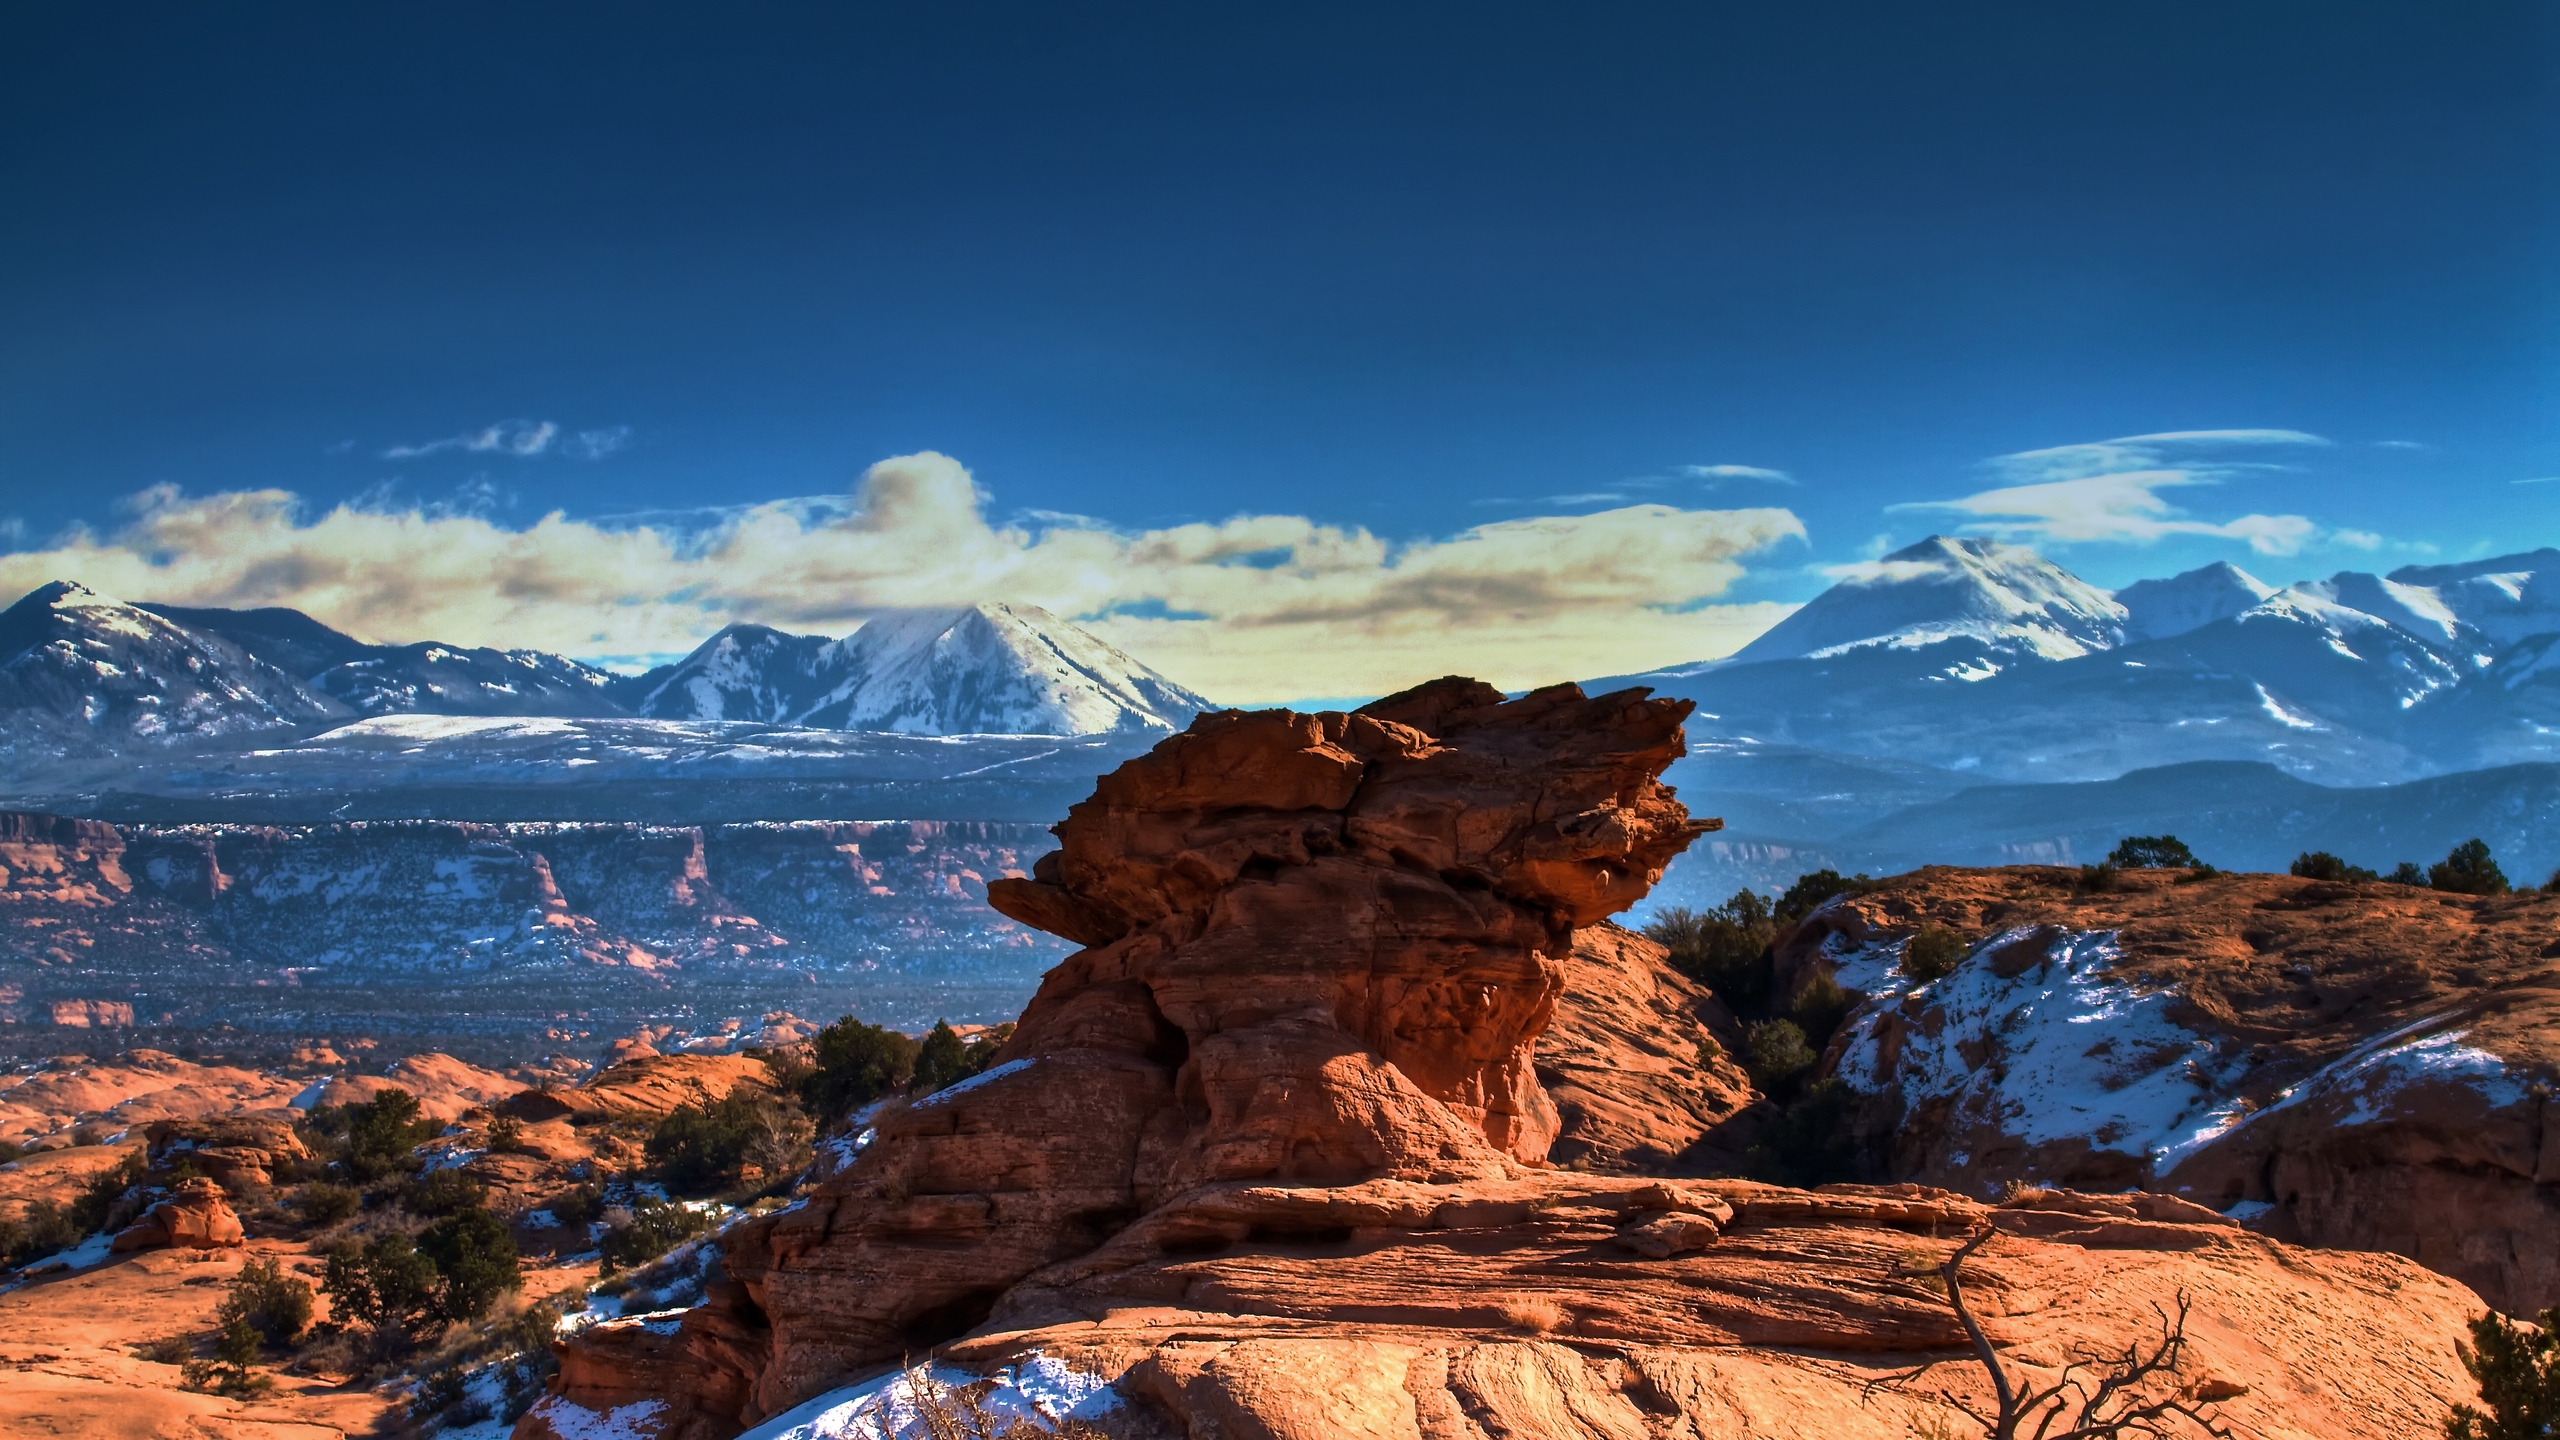 Moab Utah Mountains for 2560x1440 HDTV resolution